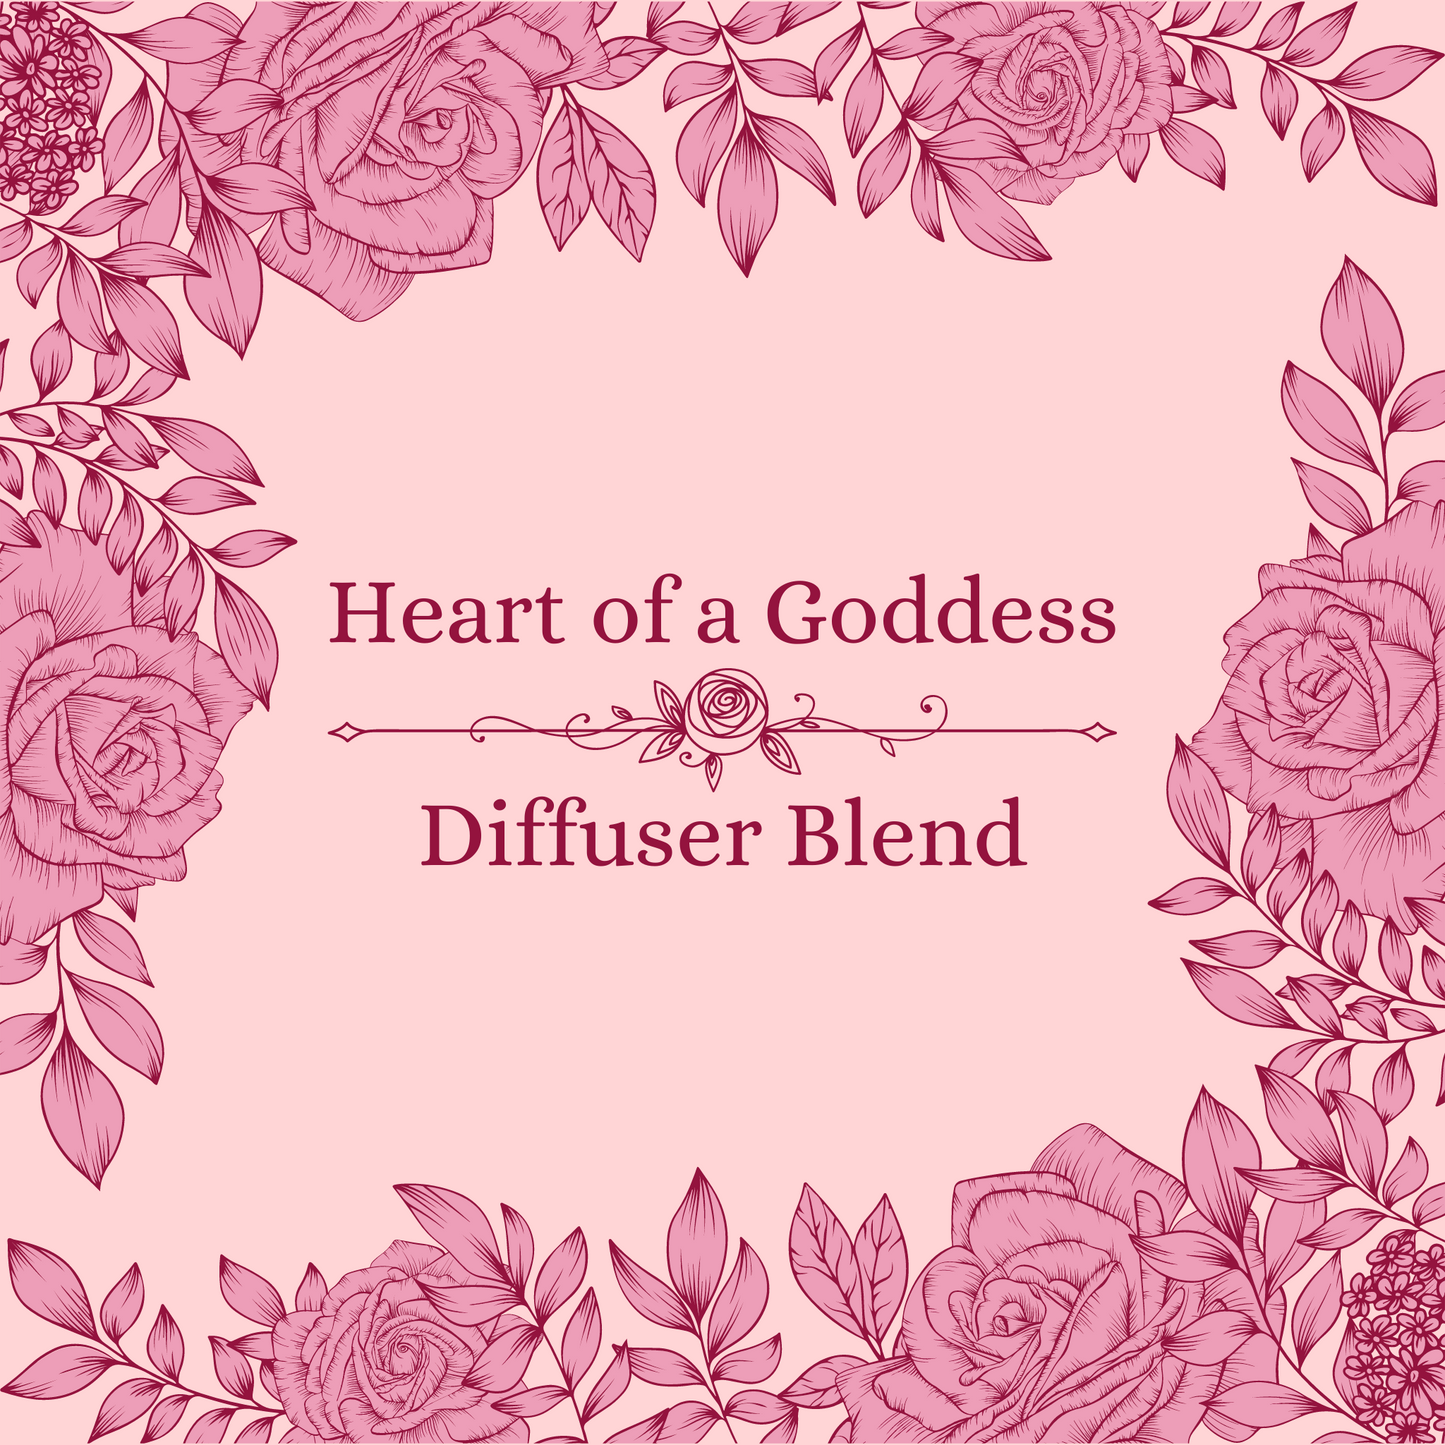 Heart of a Goddess Diffuser Blend 15ml